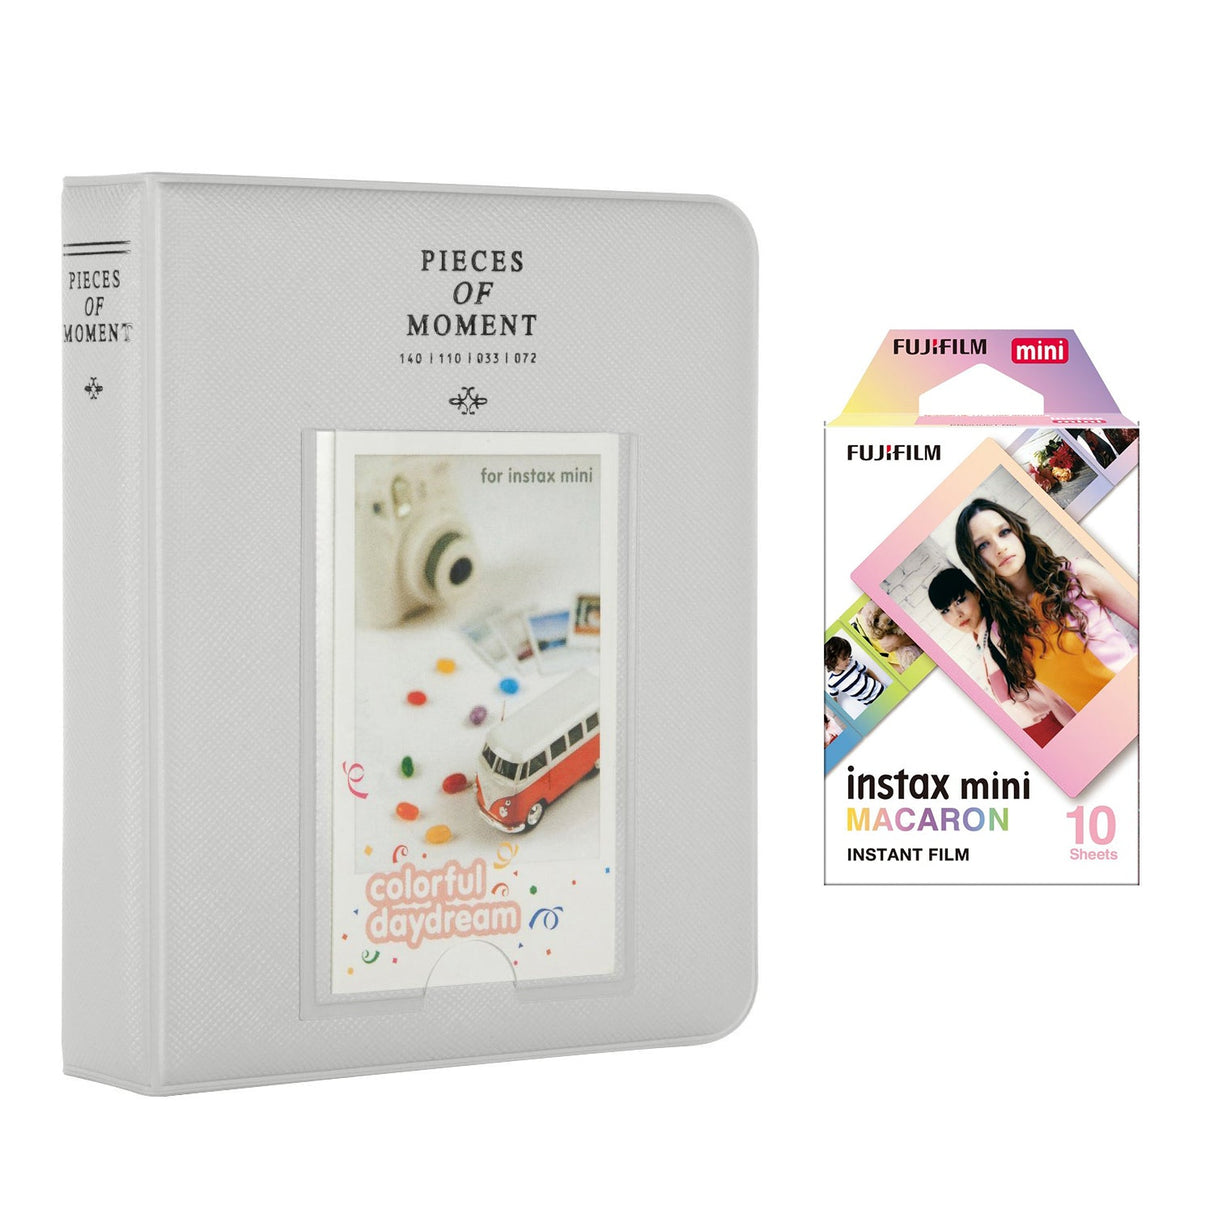 Fujifilm Instax Mini 10X1 macaron Instant Film with Instax Time Photo Album 64 Sheets (SMOKEY WHITE)